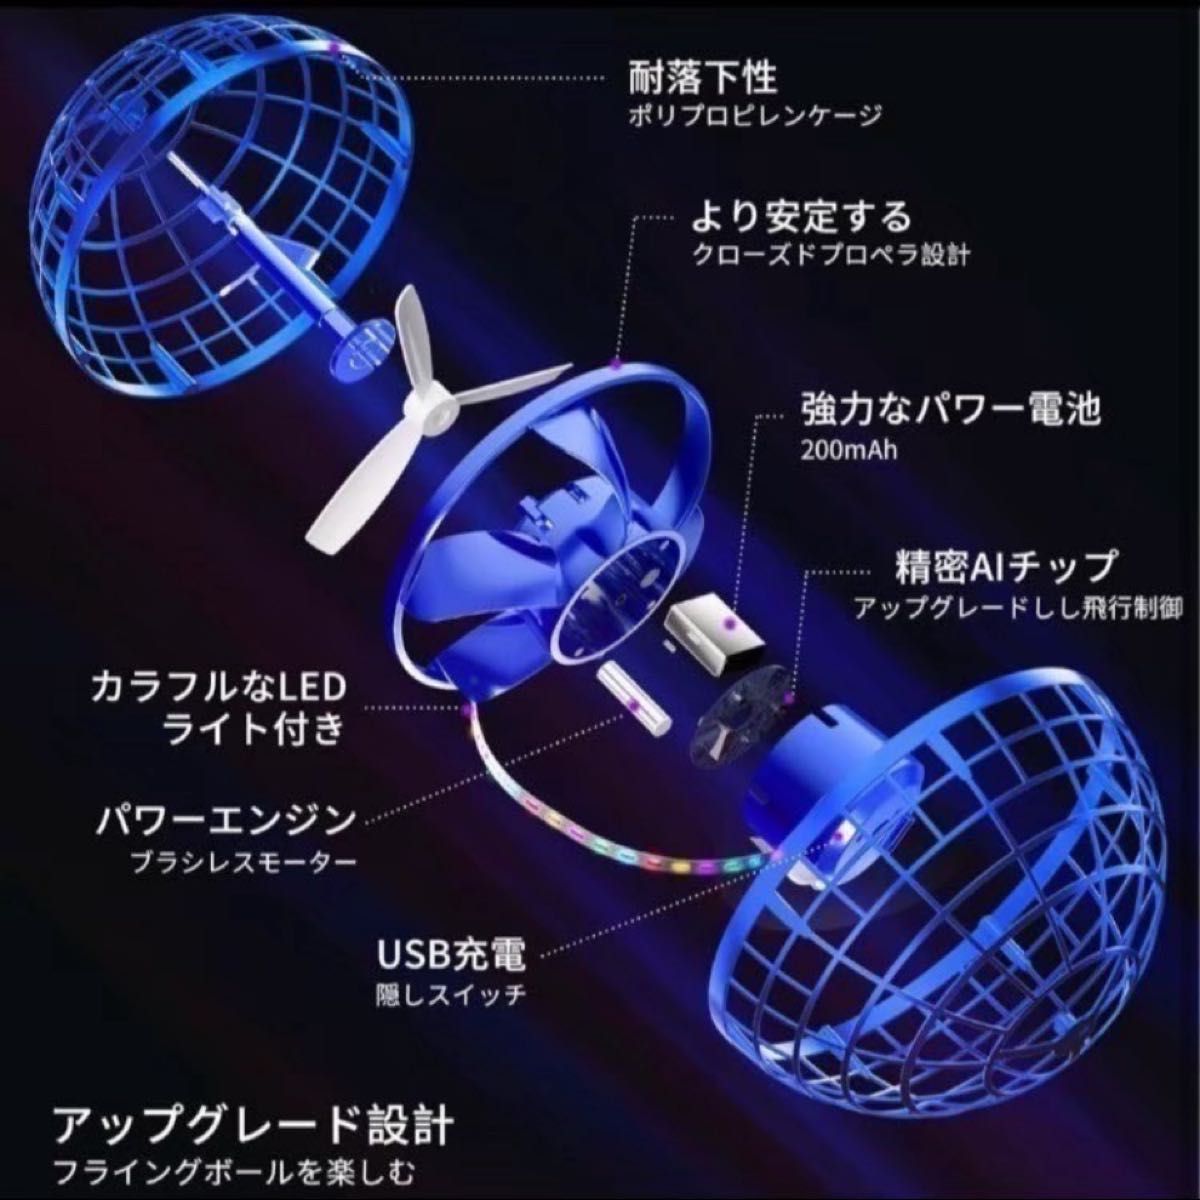 フライングボール ジャイロ 360度 フライングスピナー UFO 青